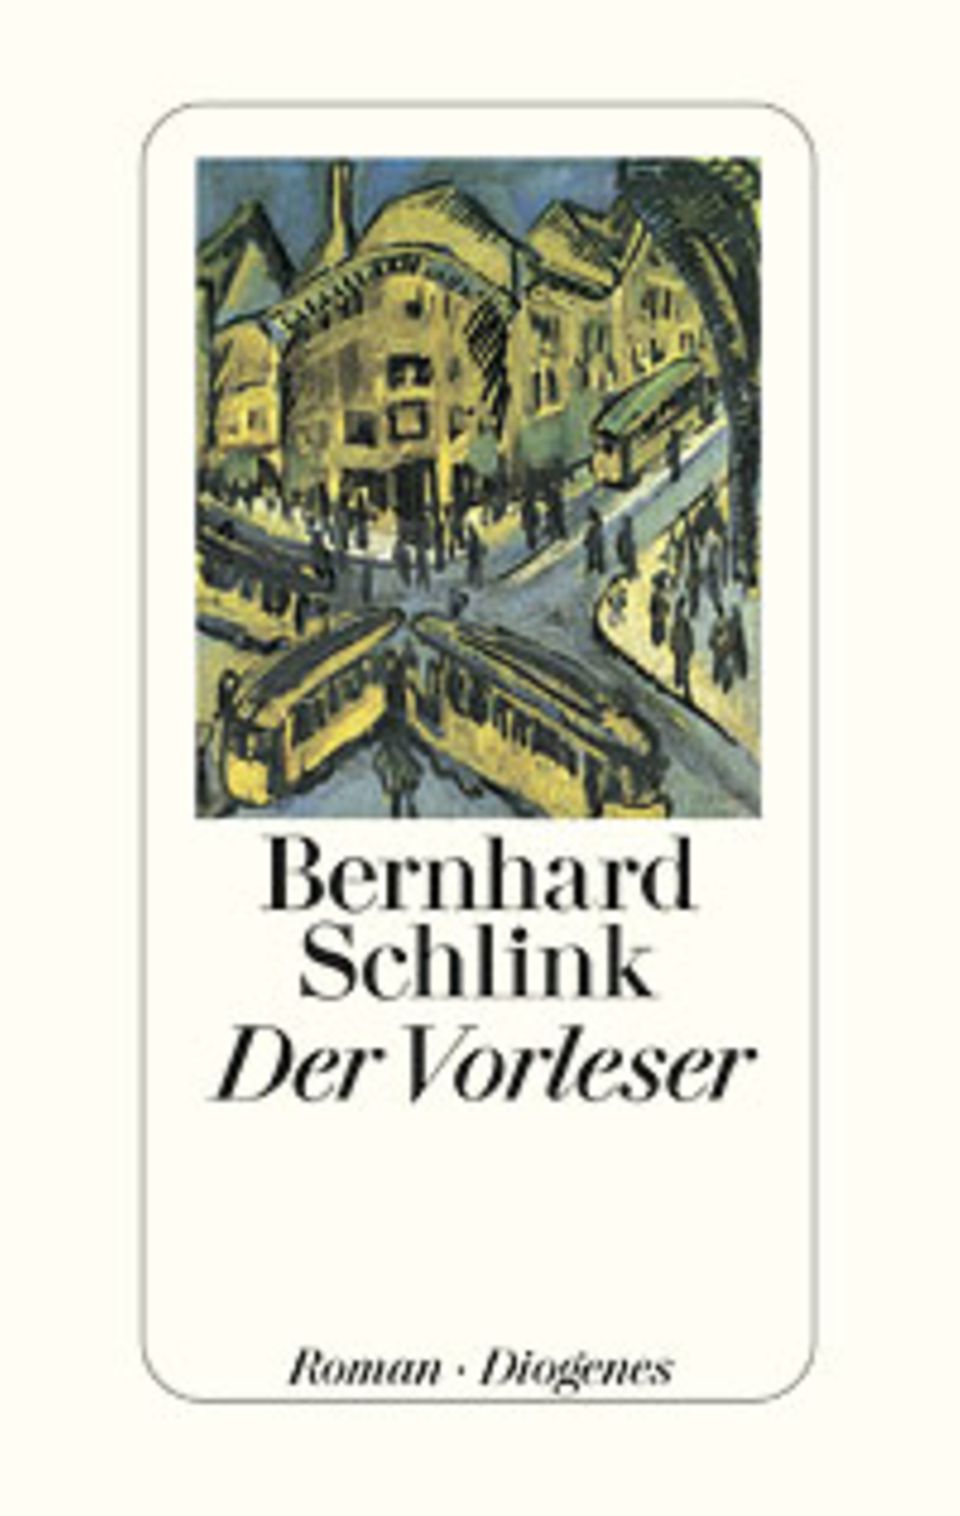 Cover des Romans "Der Vorleser"